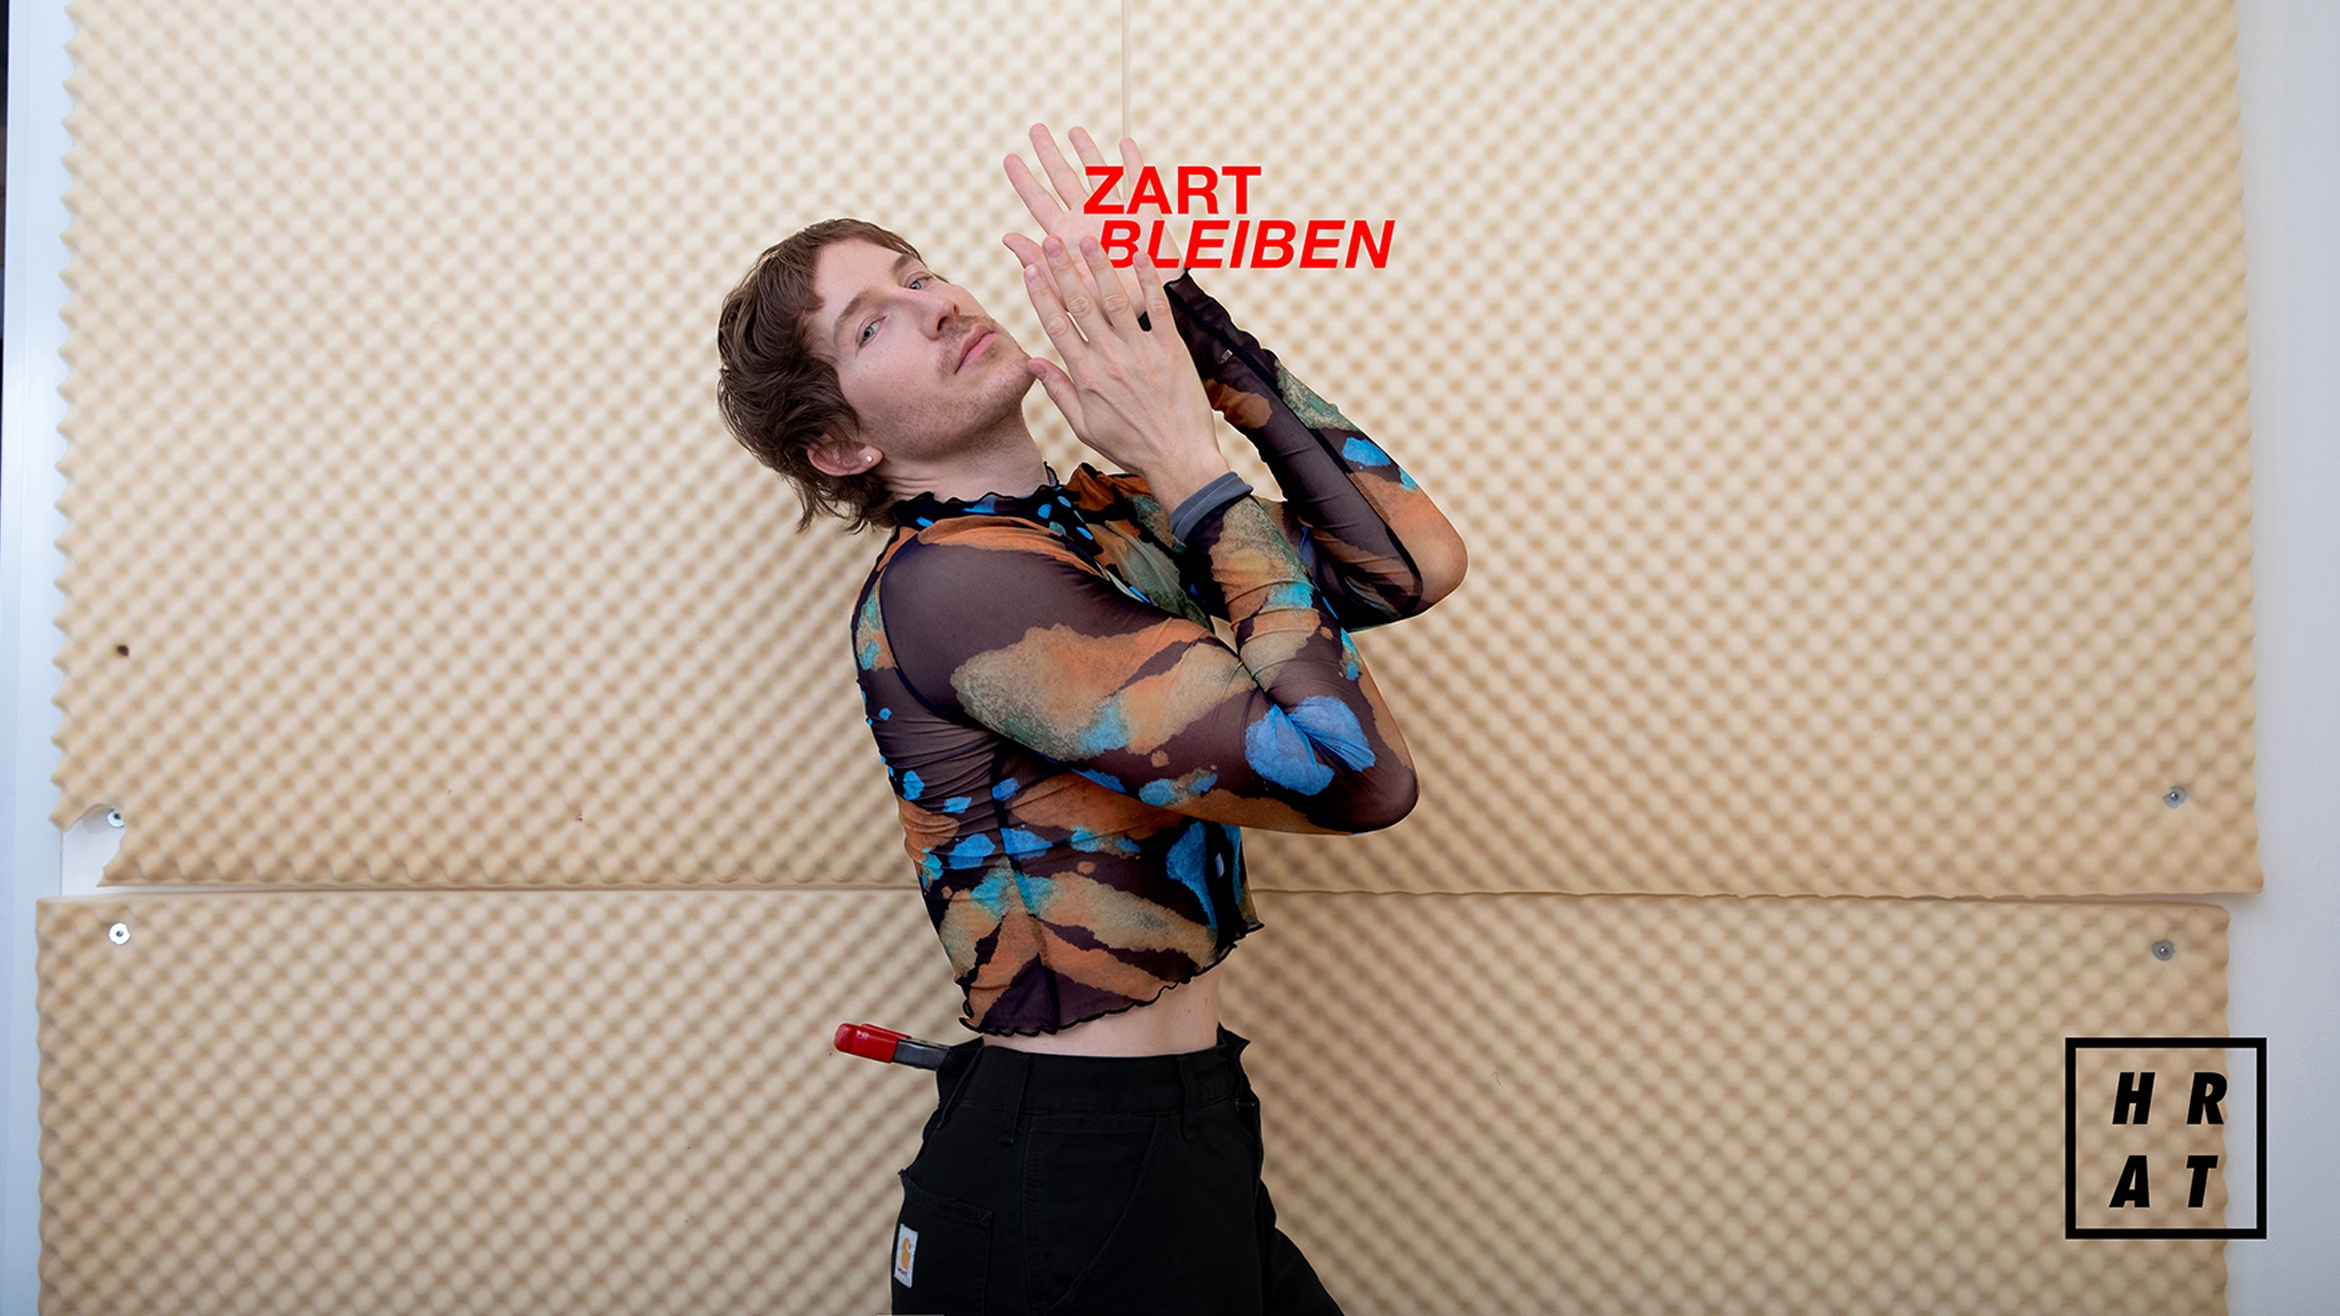 Fabian Hart startet Podcast ”Zart bleiben” –